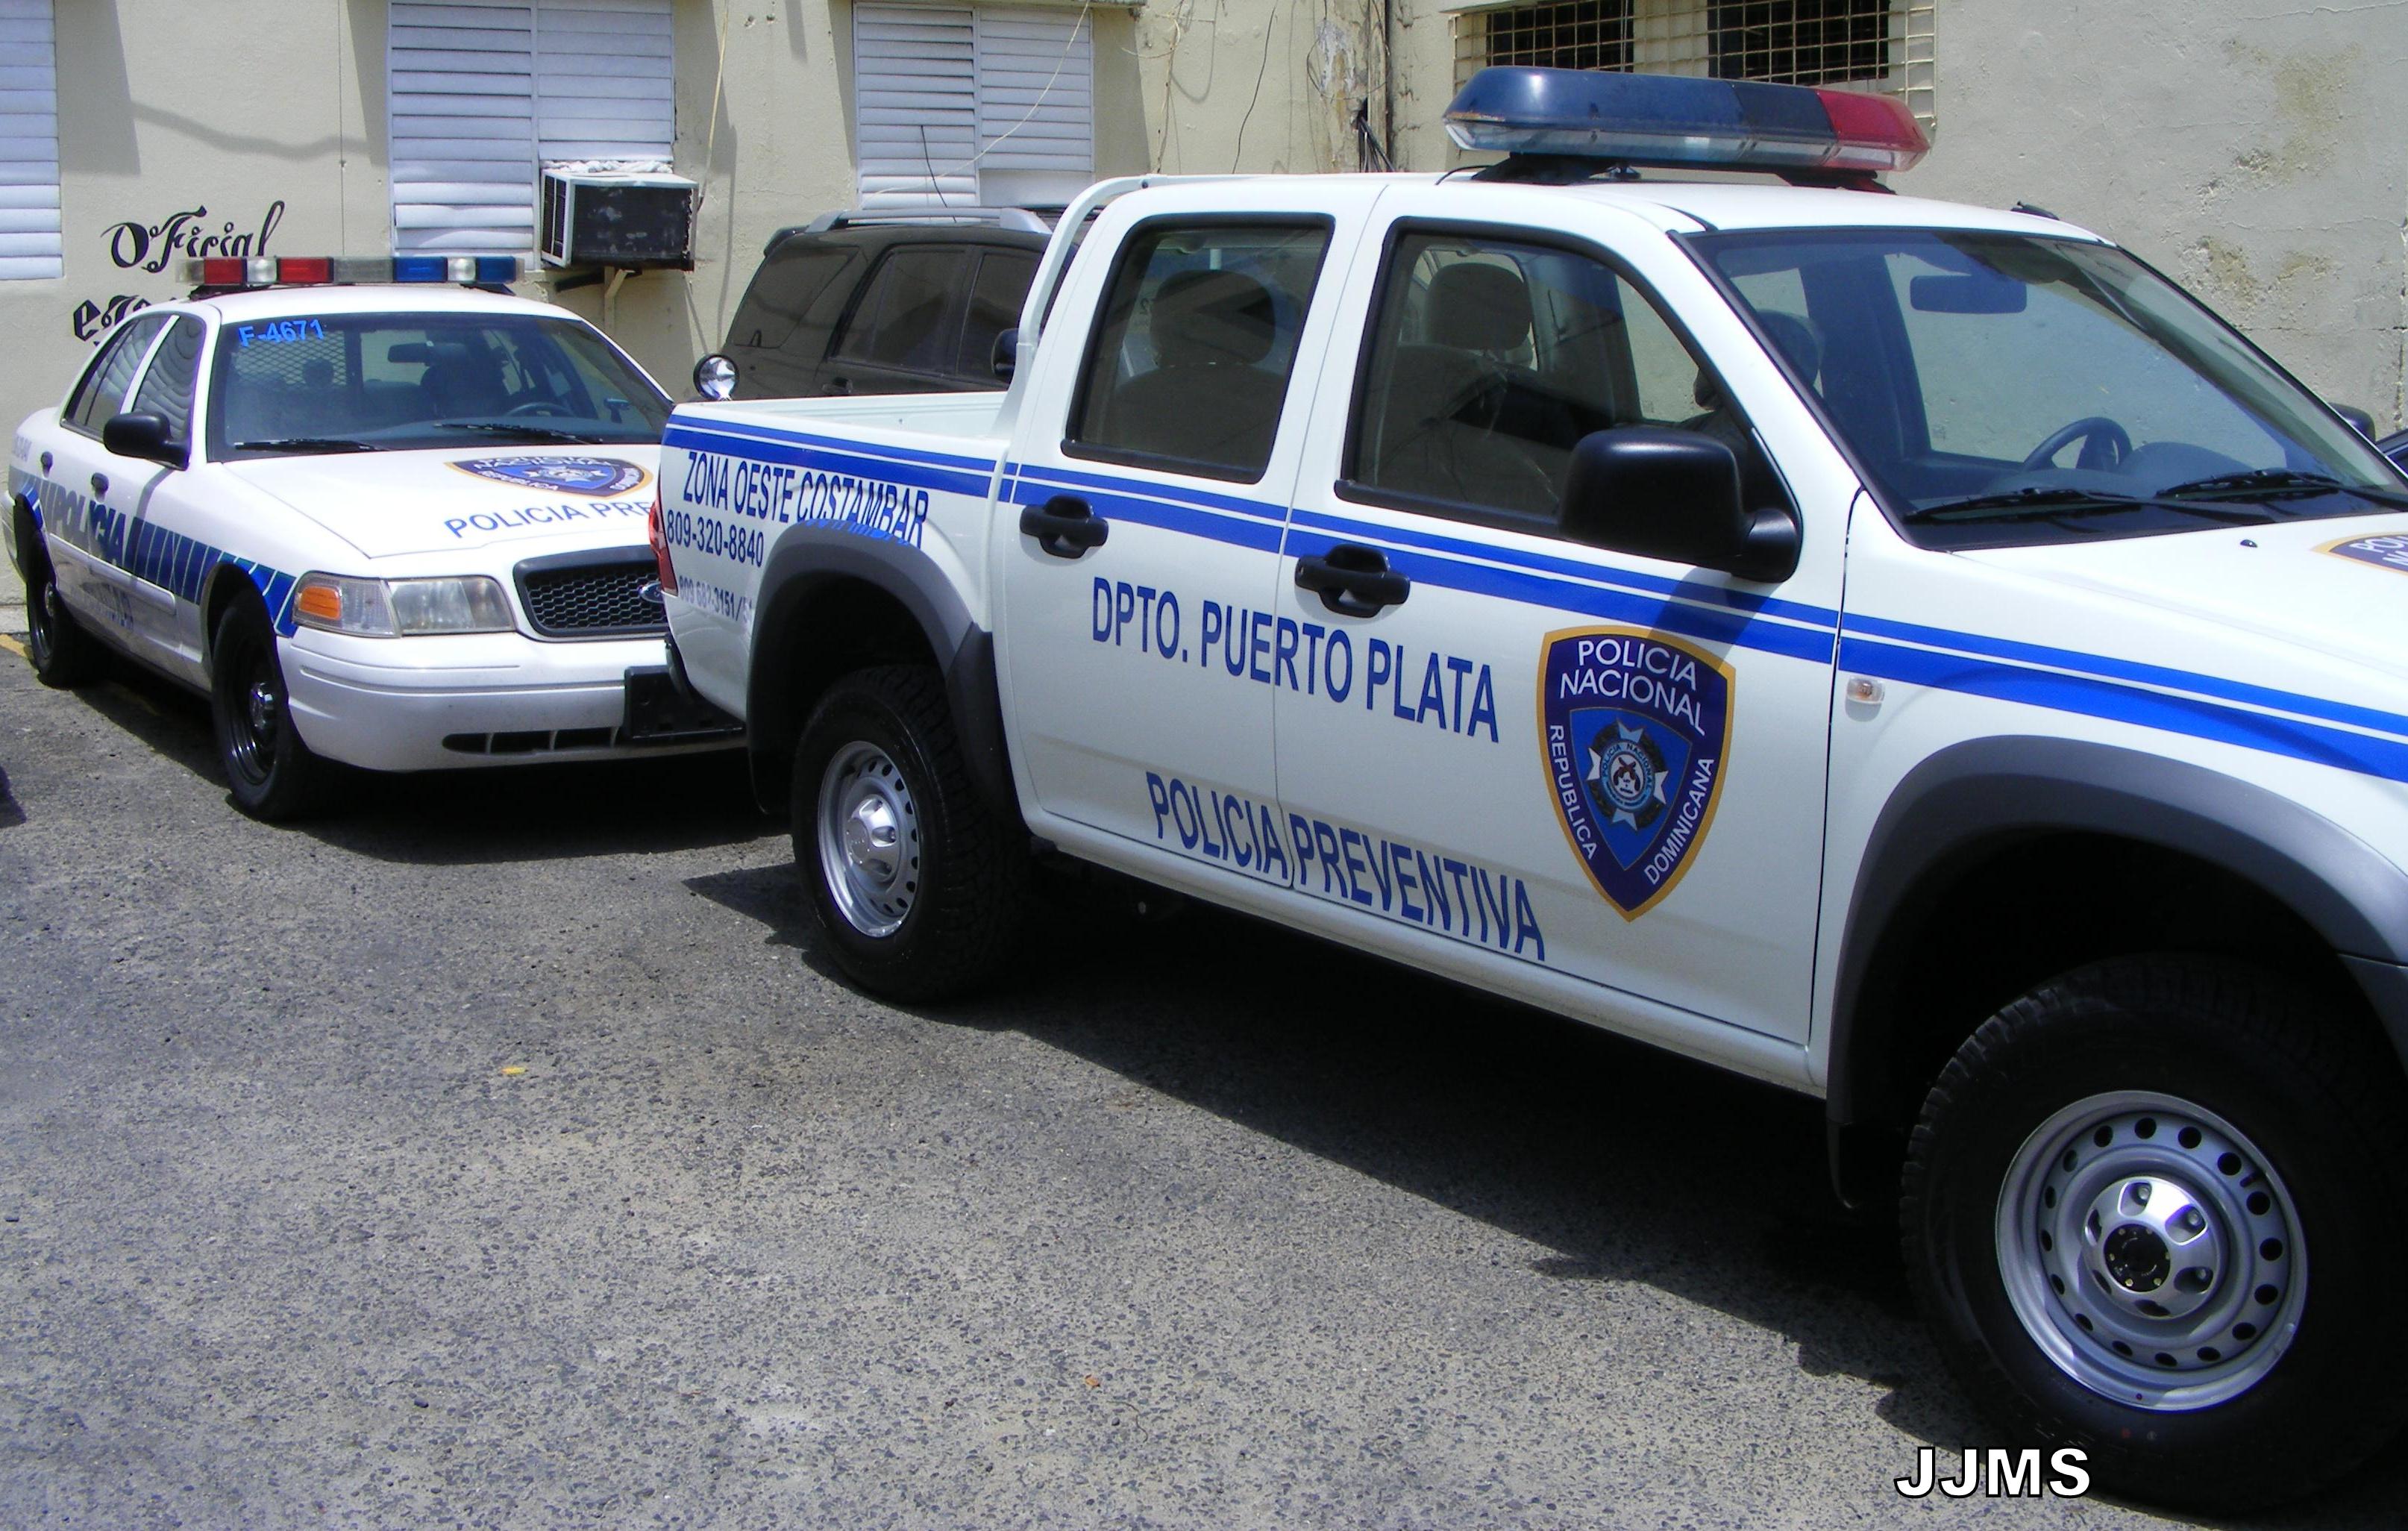 Resultado de imagen para accidente policia puerto plata